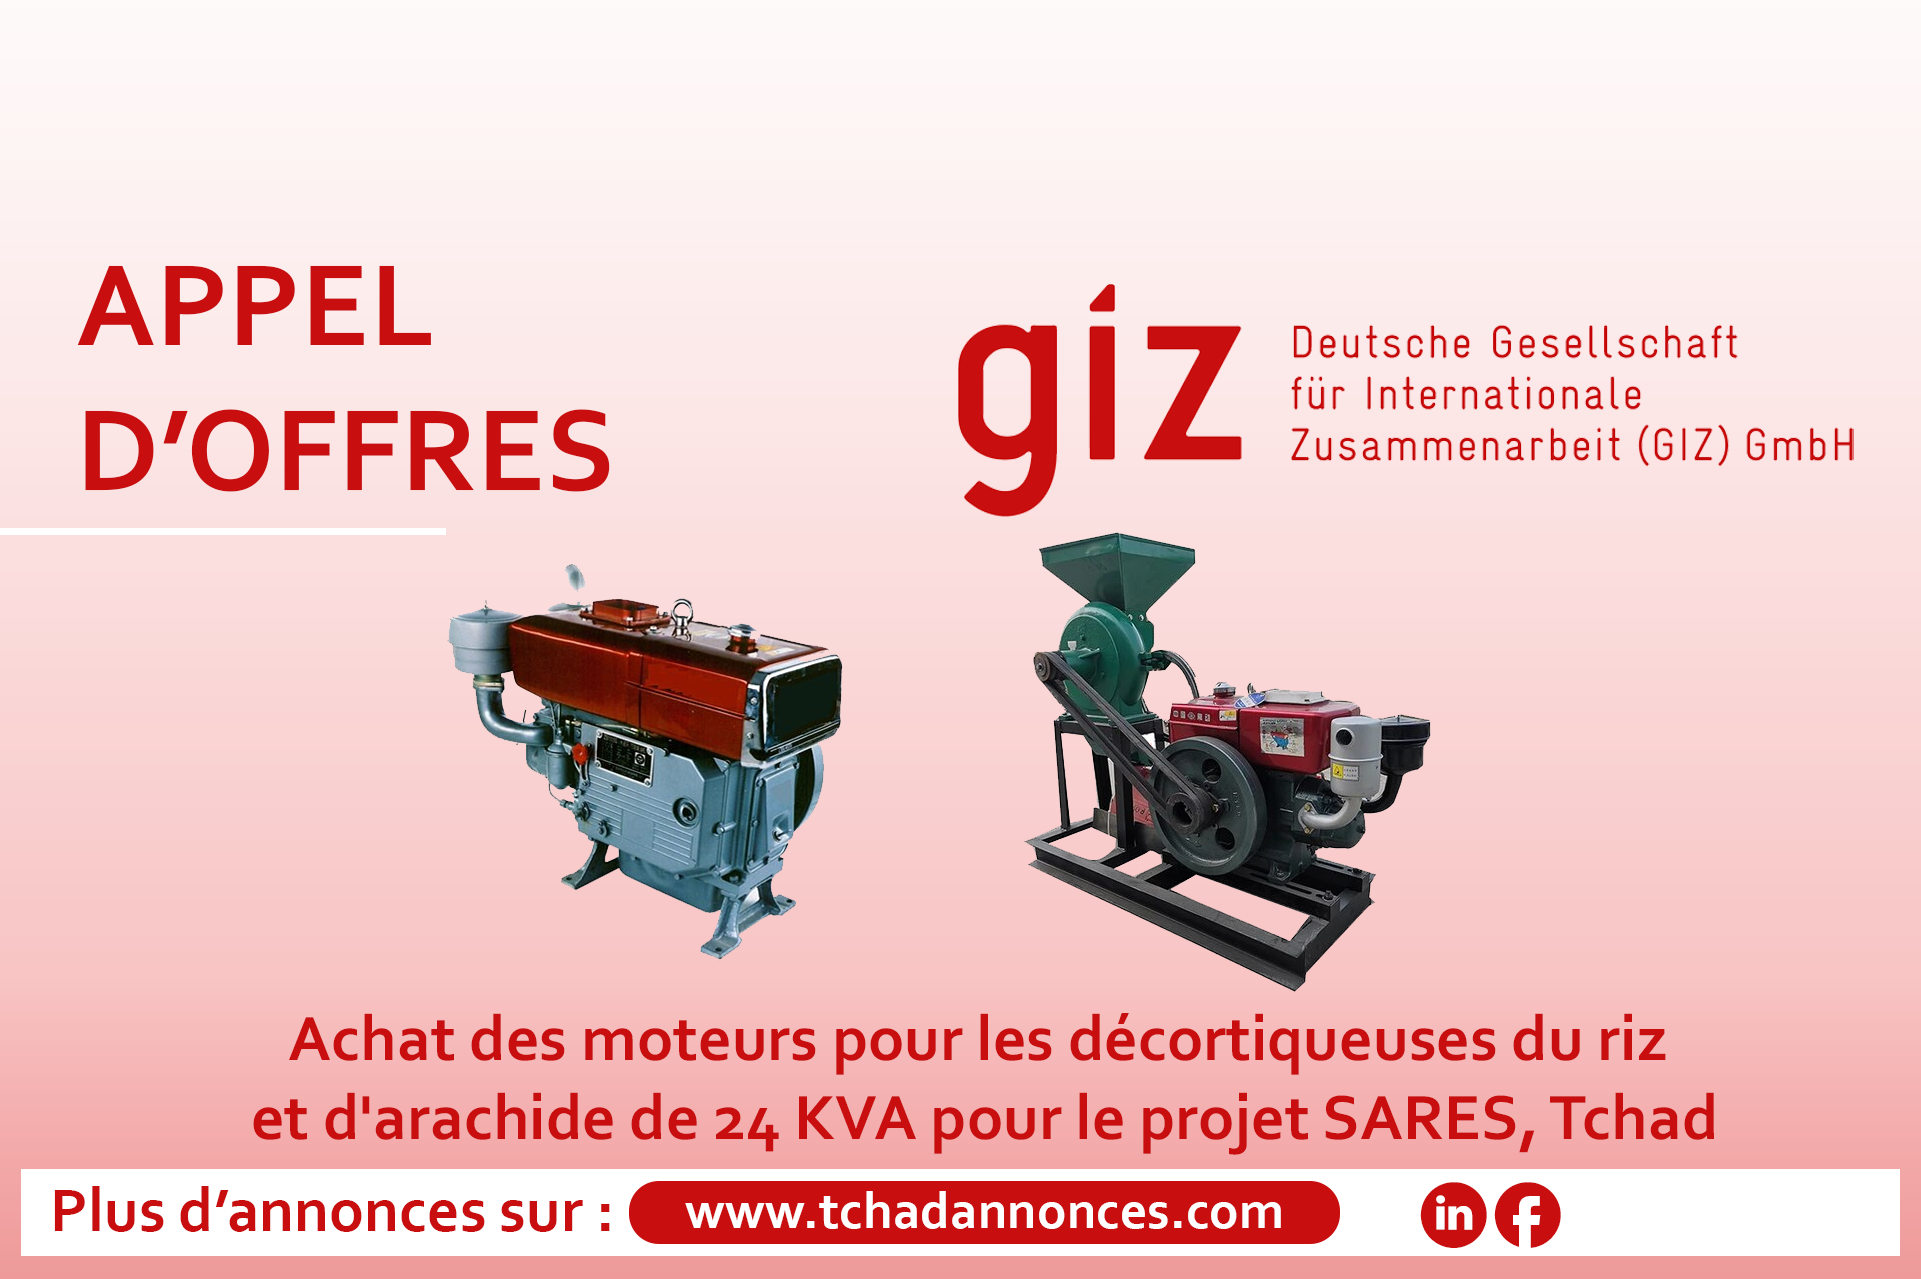 La GIZ lance un avis d’appel d’offres pour l’achat des moteurs pour les décortiqueuses du riz et d’arachide de 24 KVA pour le projet SARES, Tchad